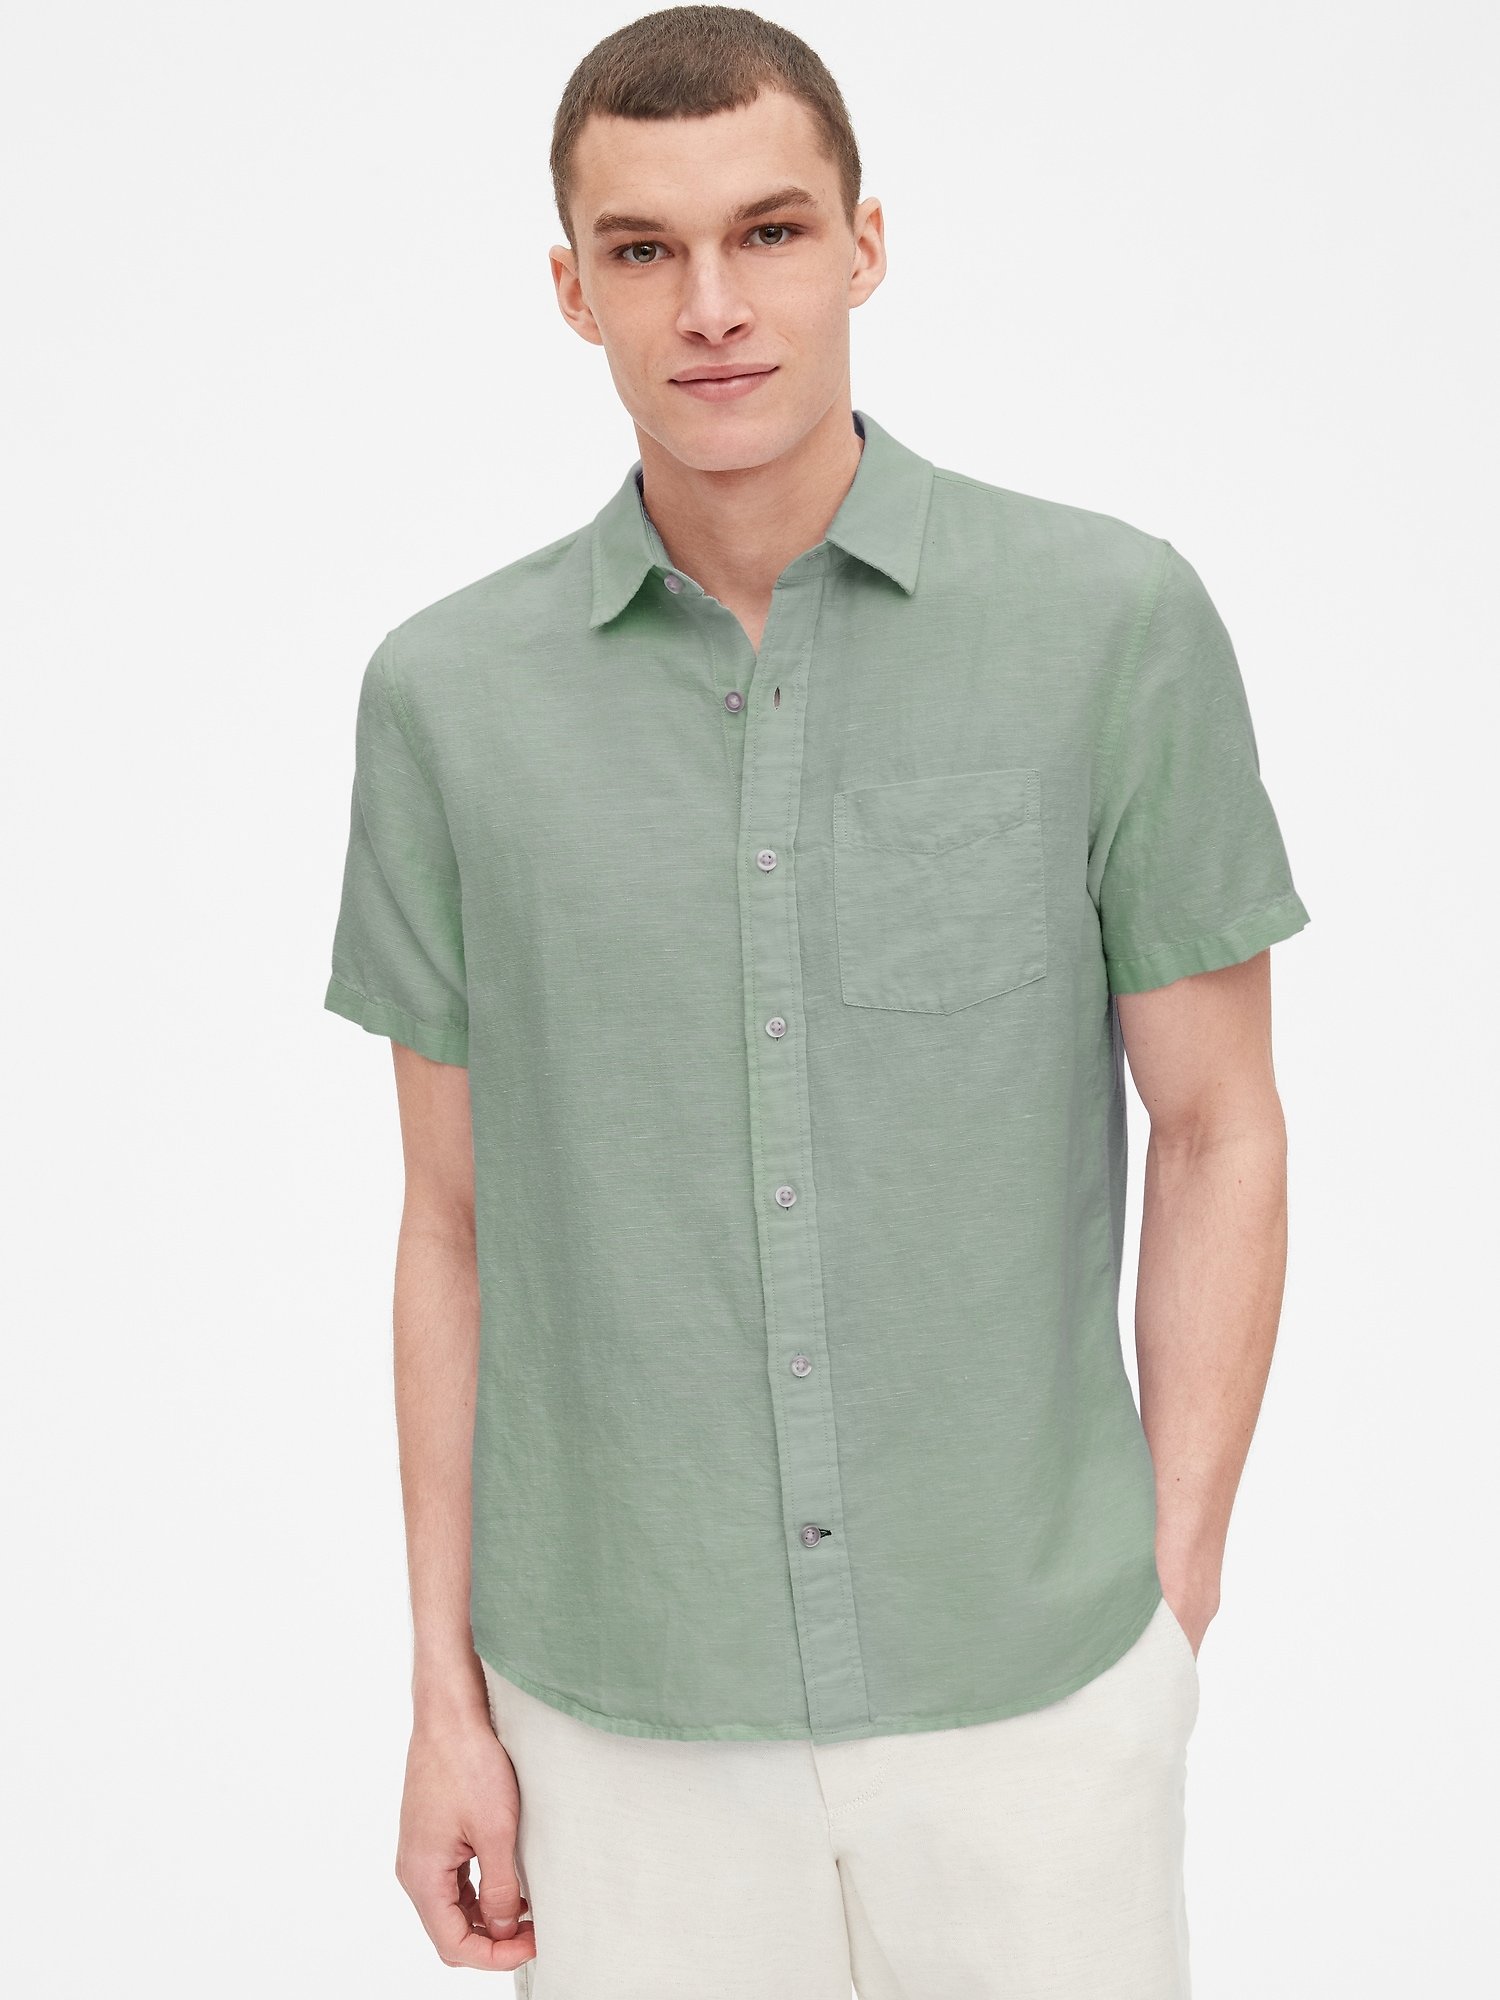 Erkek Pamuk-Keten Karışımı Kısa Kollu Gömlek product image